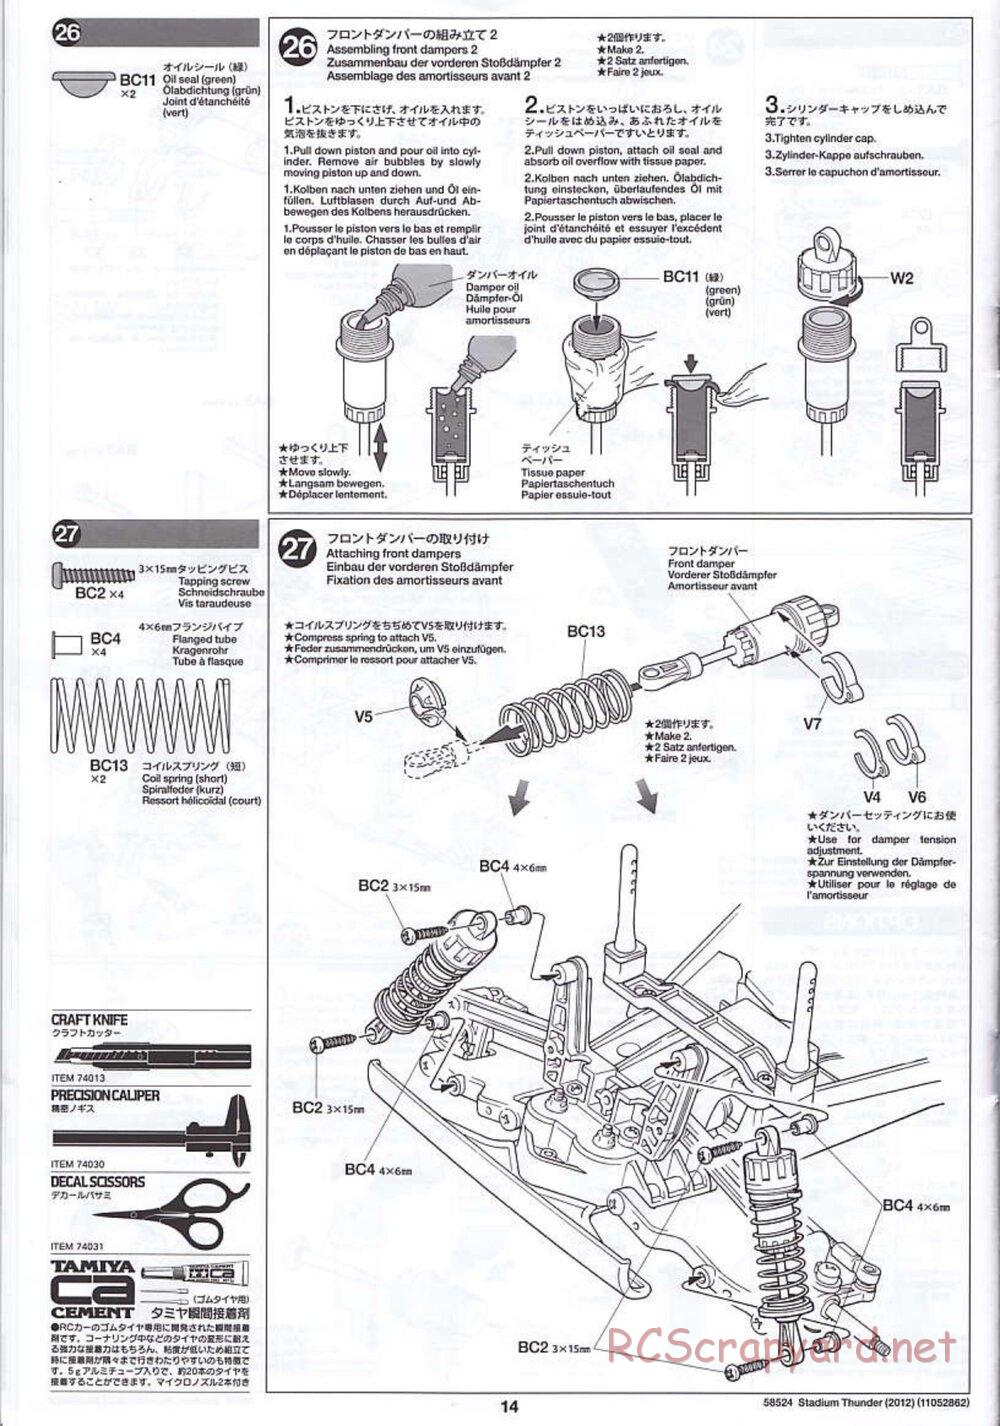 Tamiya - Stadium Thunder 2012 - FAL Chassis - Manual - Page 14